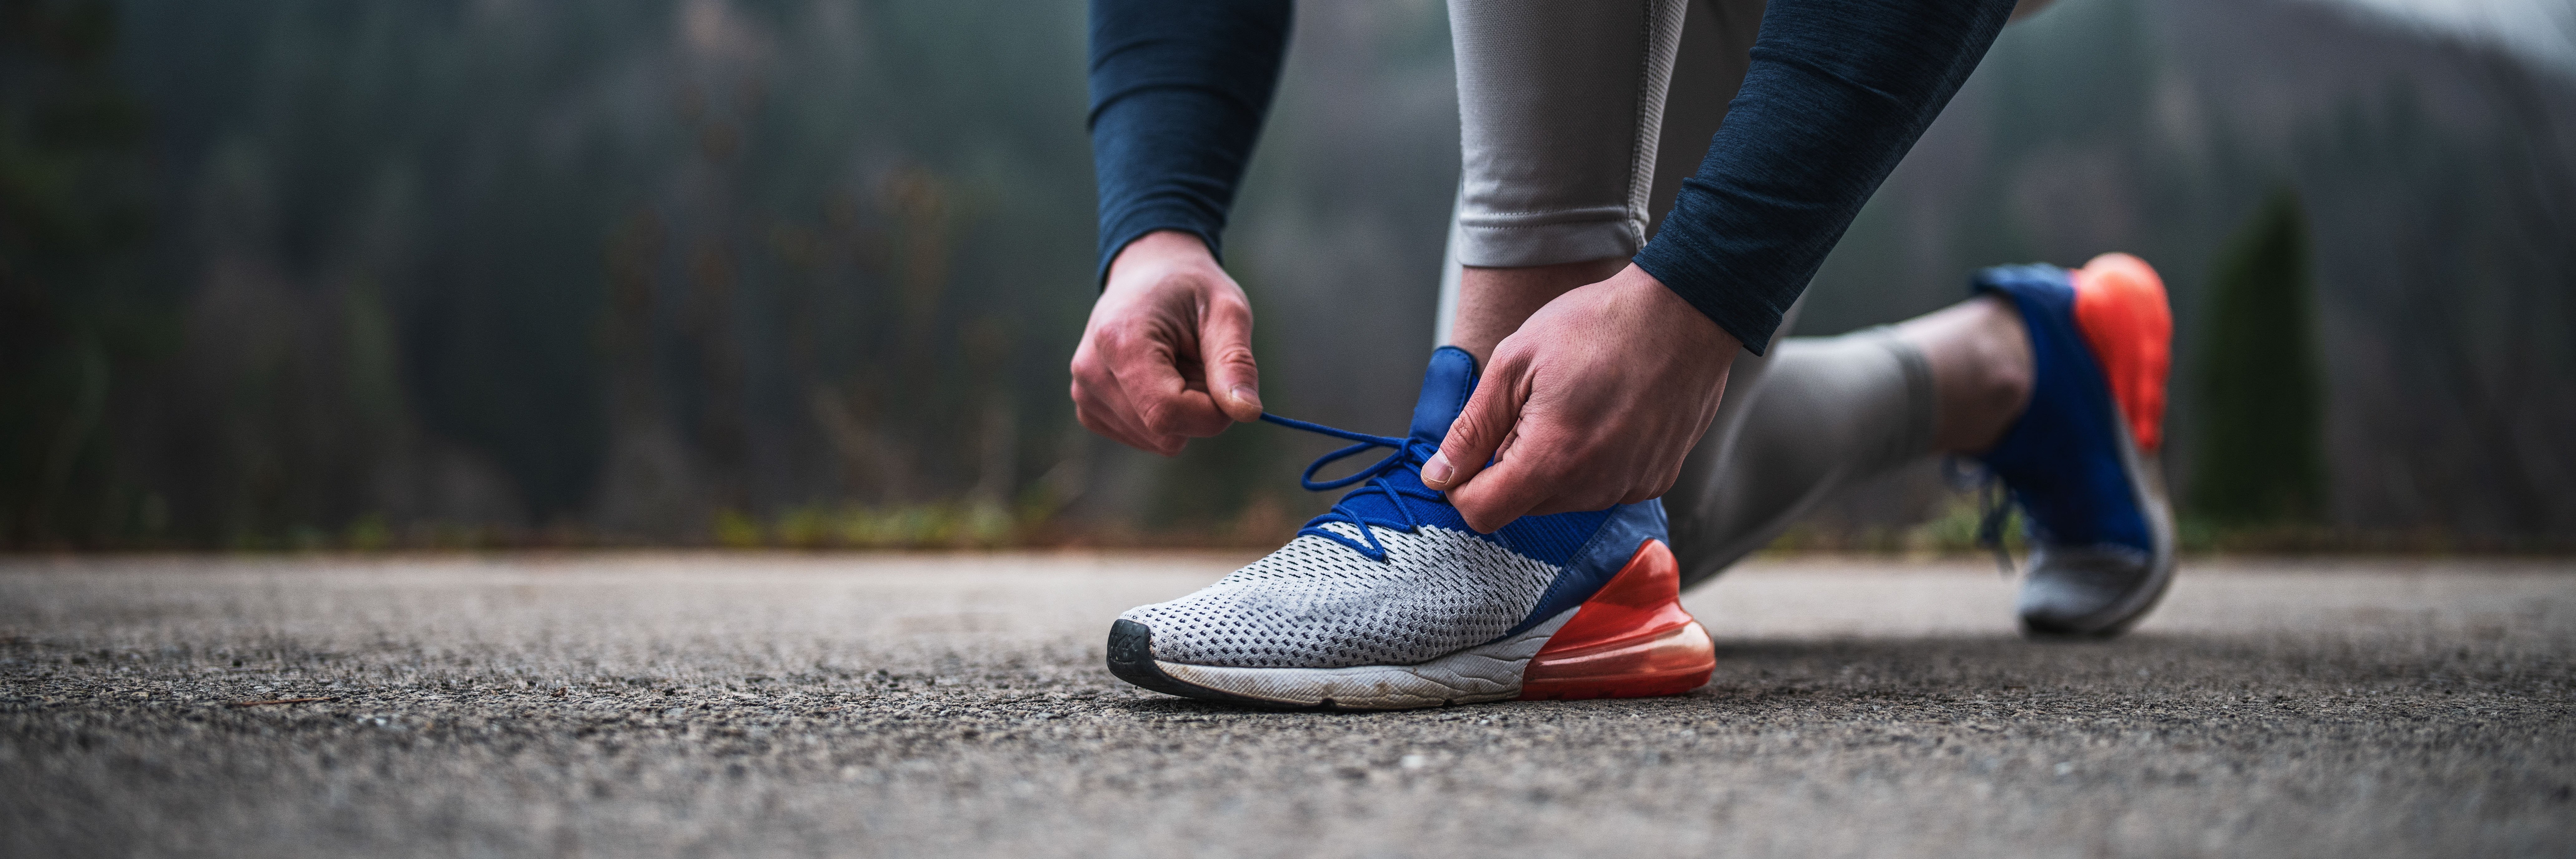 Auf dem Bild sieht man Beine und Arme einer Person in Sportkleidung, die sich gerade die Schuhe zubindet, um Laufen zu gehen. Die Person befindet sich auf einer Straße, vermutlich vor einem Waldstück.